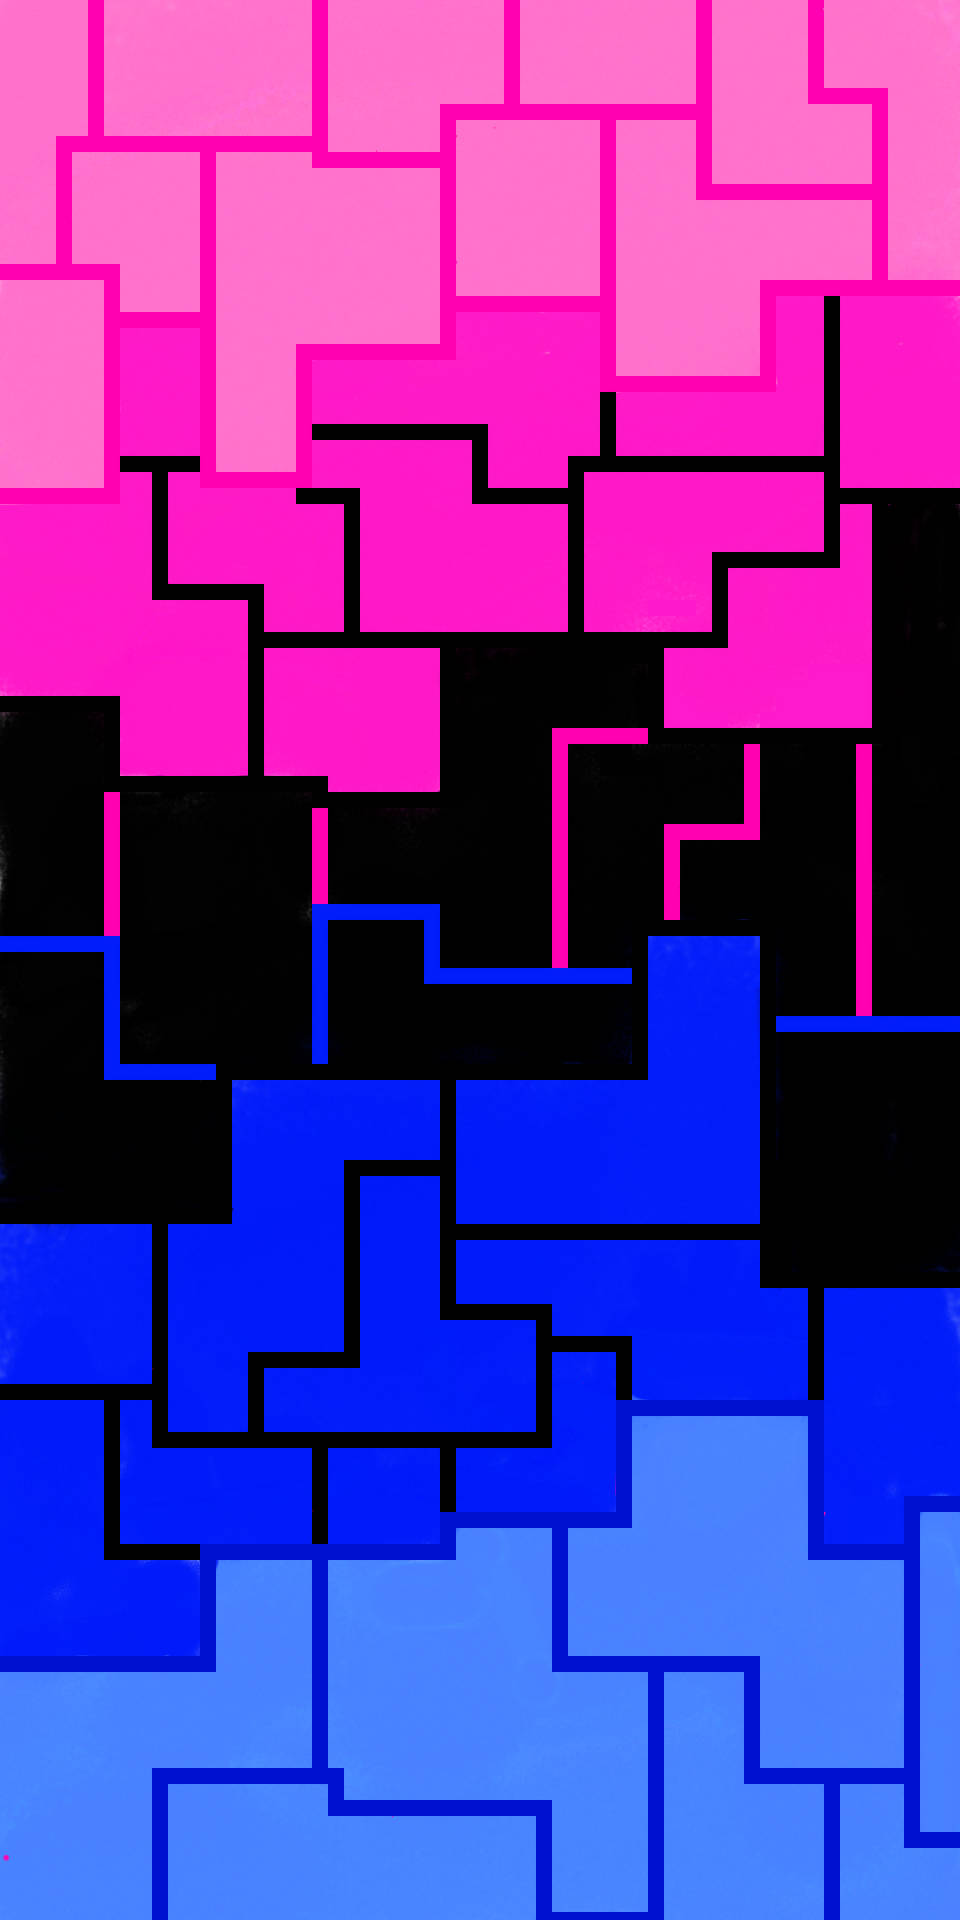 Einrosa Und Blau Gefliestes Muster Mit Einem Blauen Quadrat. Wallpaper